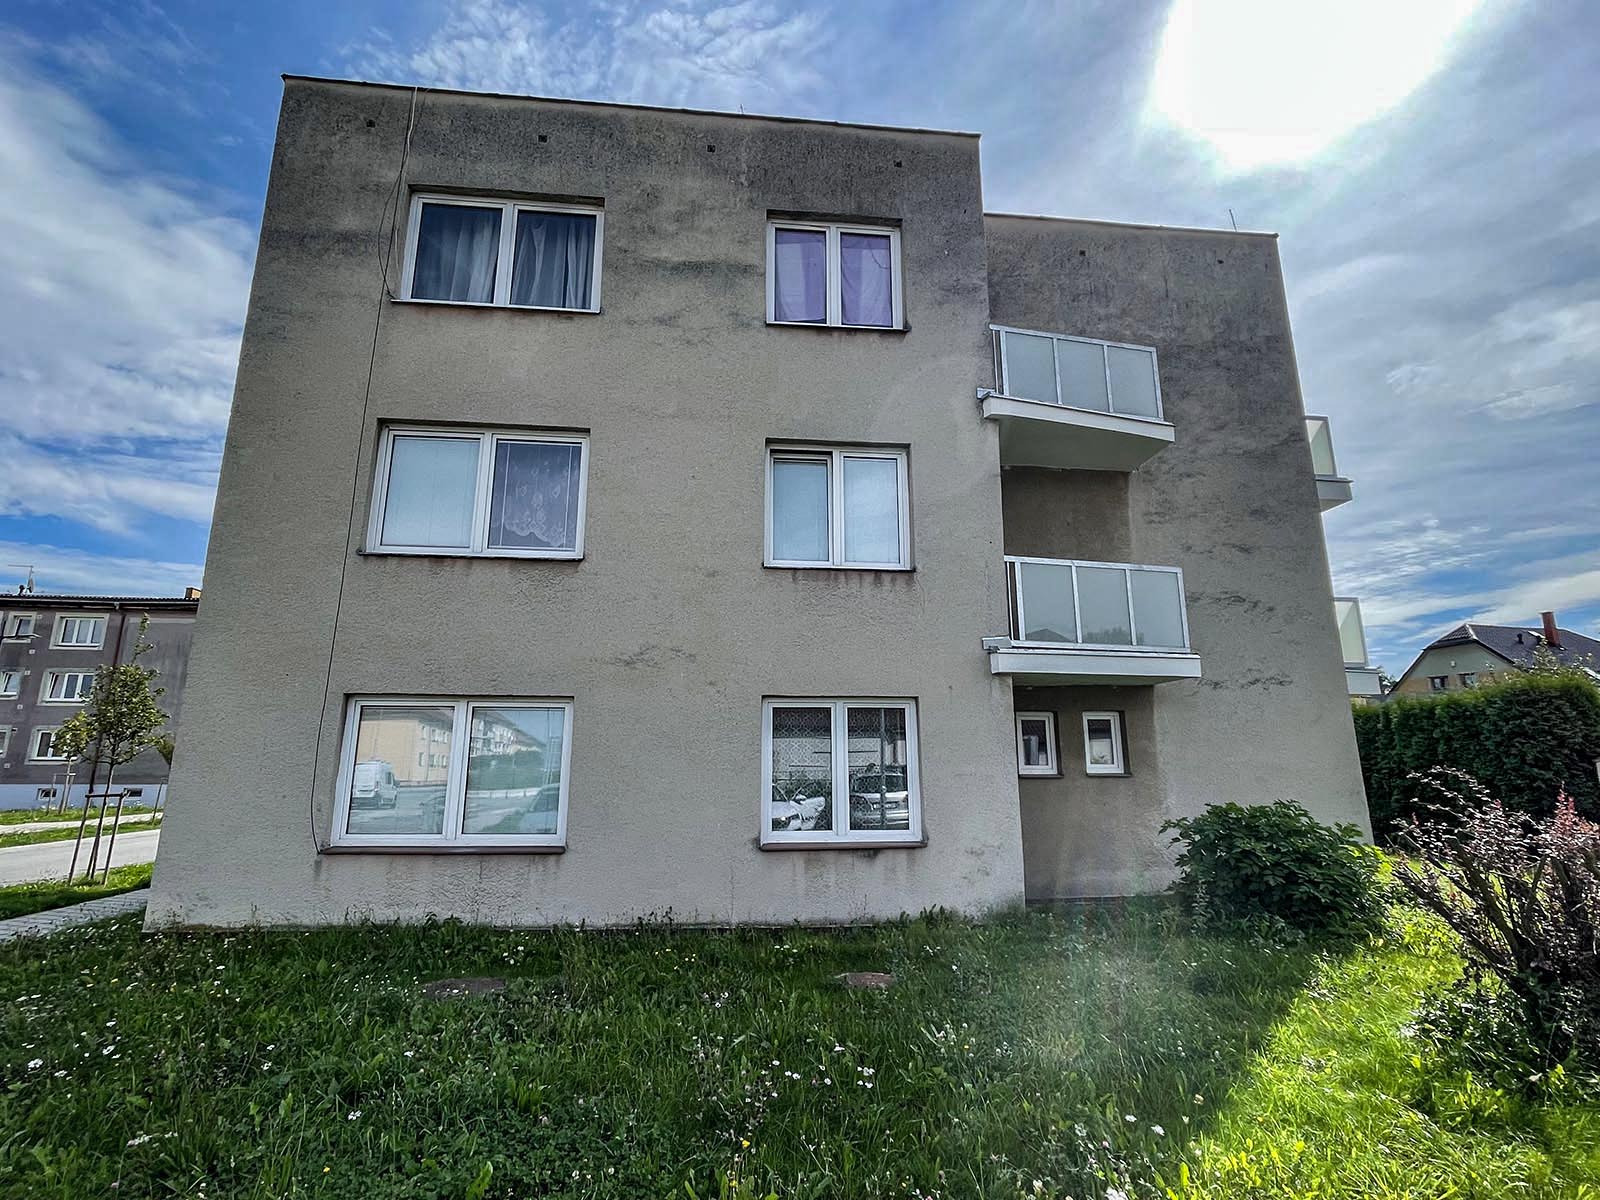 Zateplení bytového domu a sanace a hydroizolace spodní stavby - Týn nad Vltavou